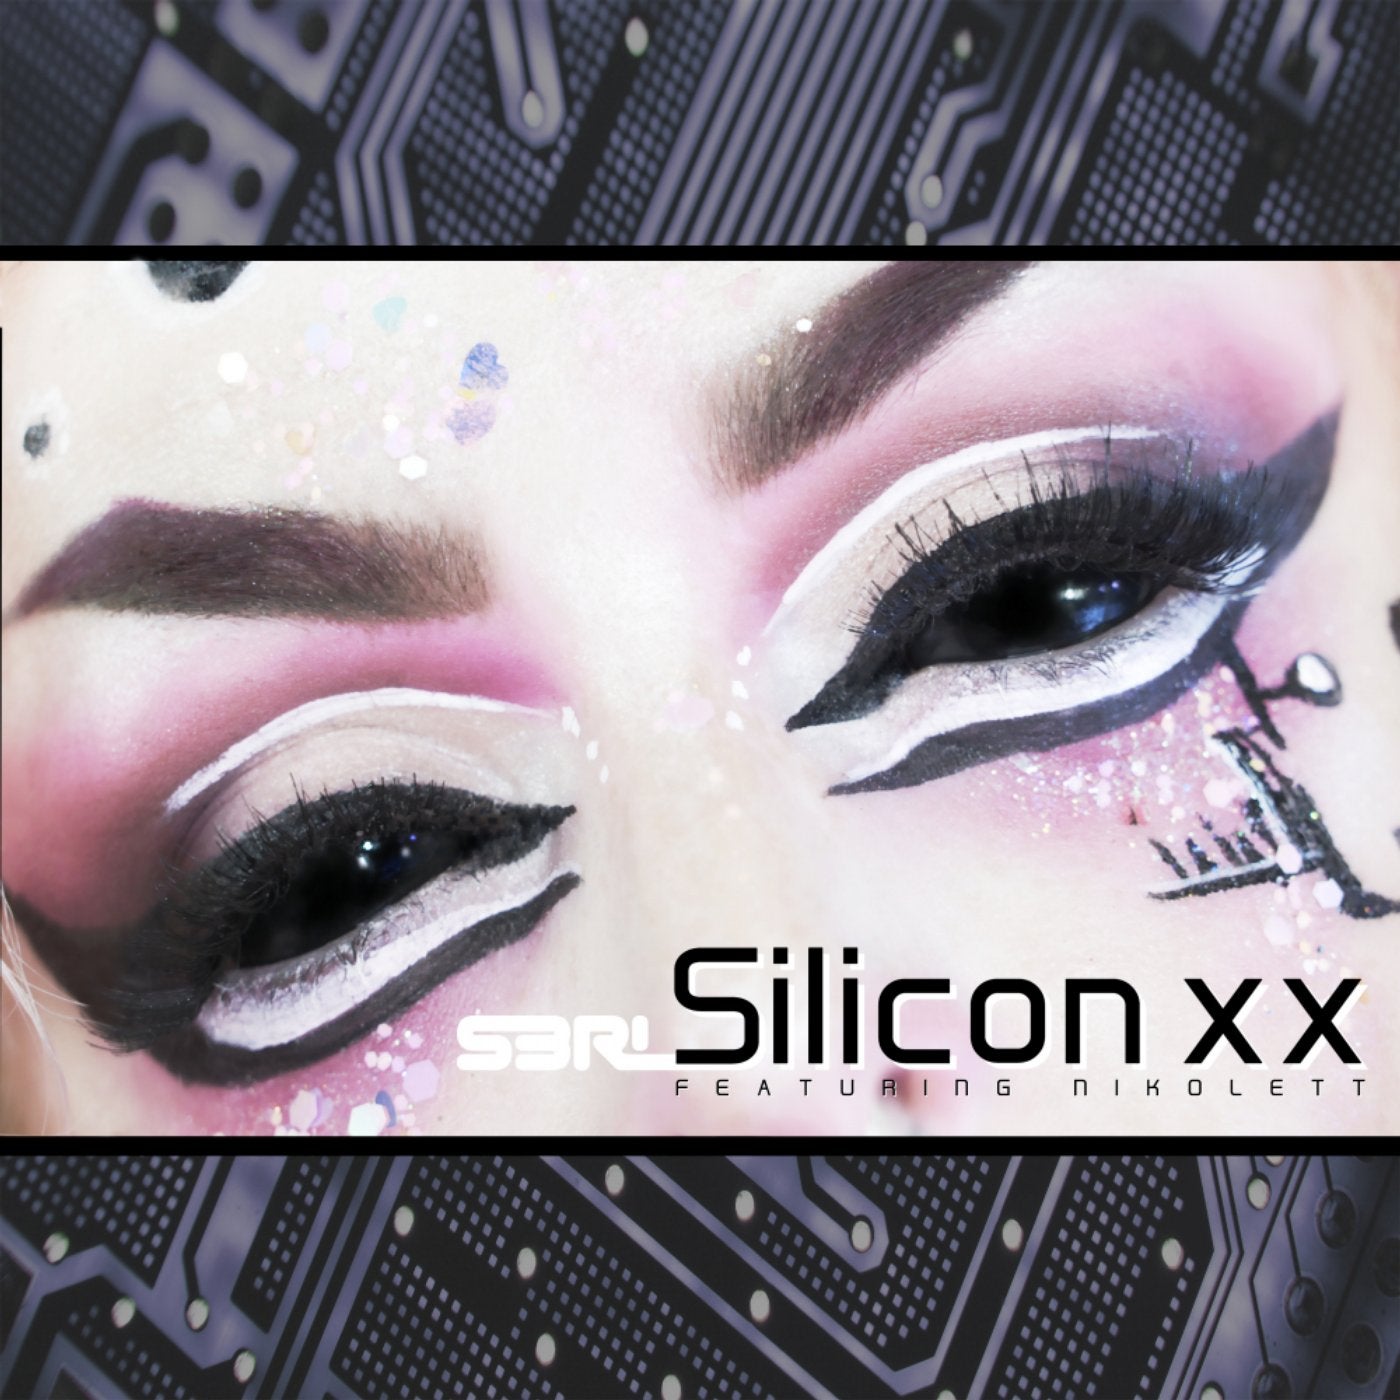 Silicon XX (DJ Edit)